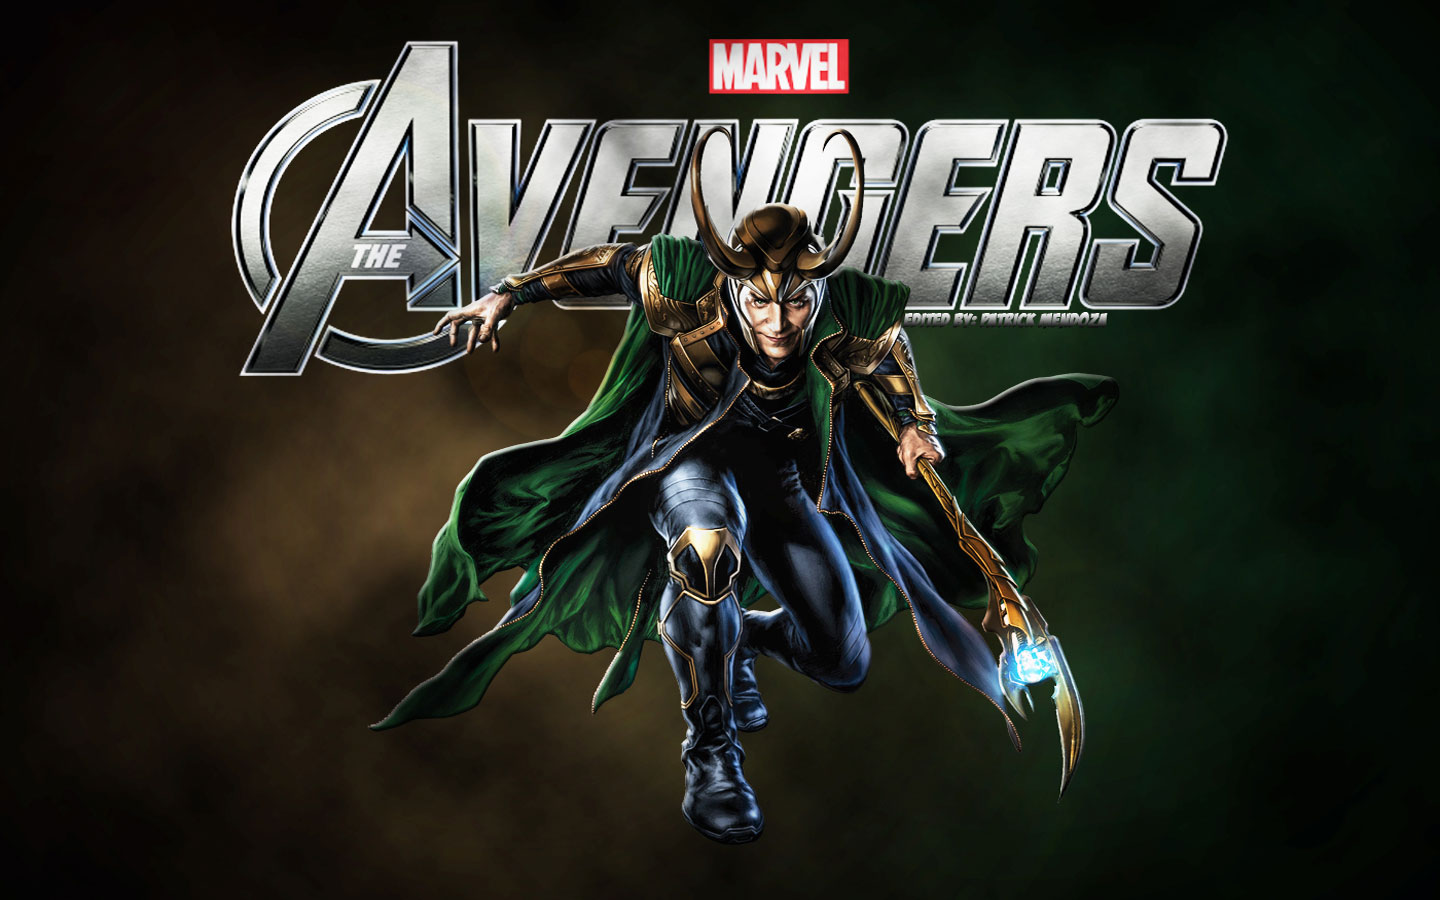 Descarga gratuita de fondo de pantalla para móvil de Loki (Marvel Cómics), Los Vengadores, Películas.